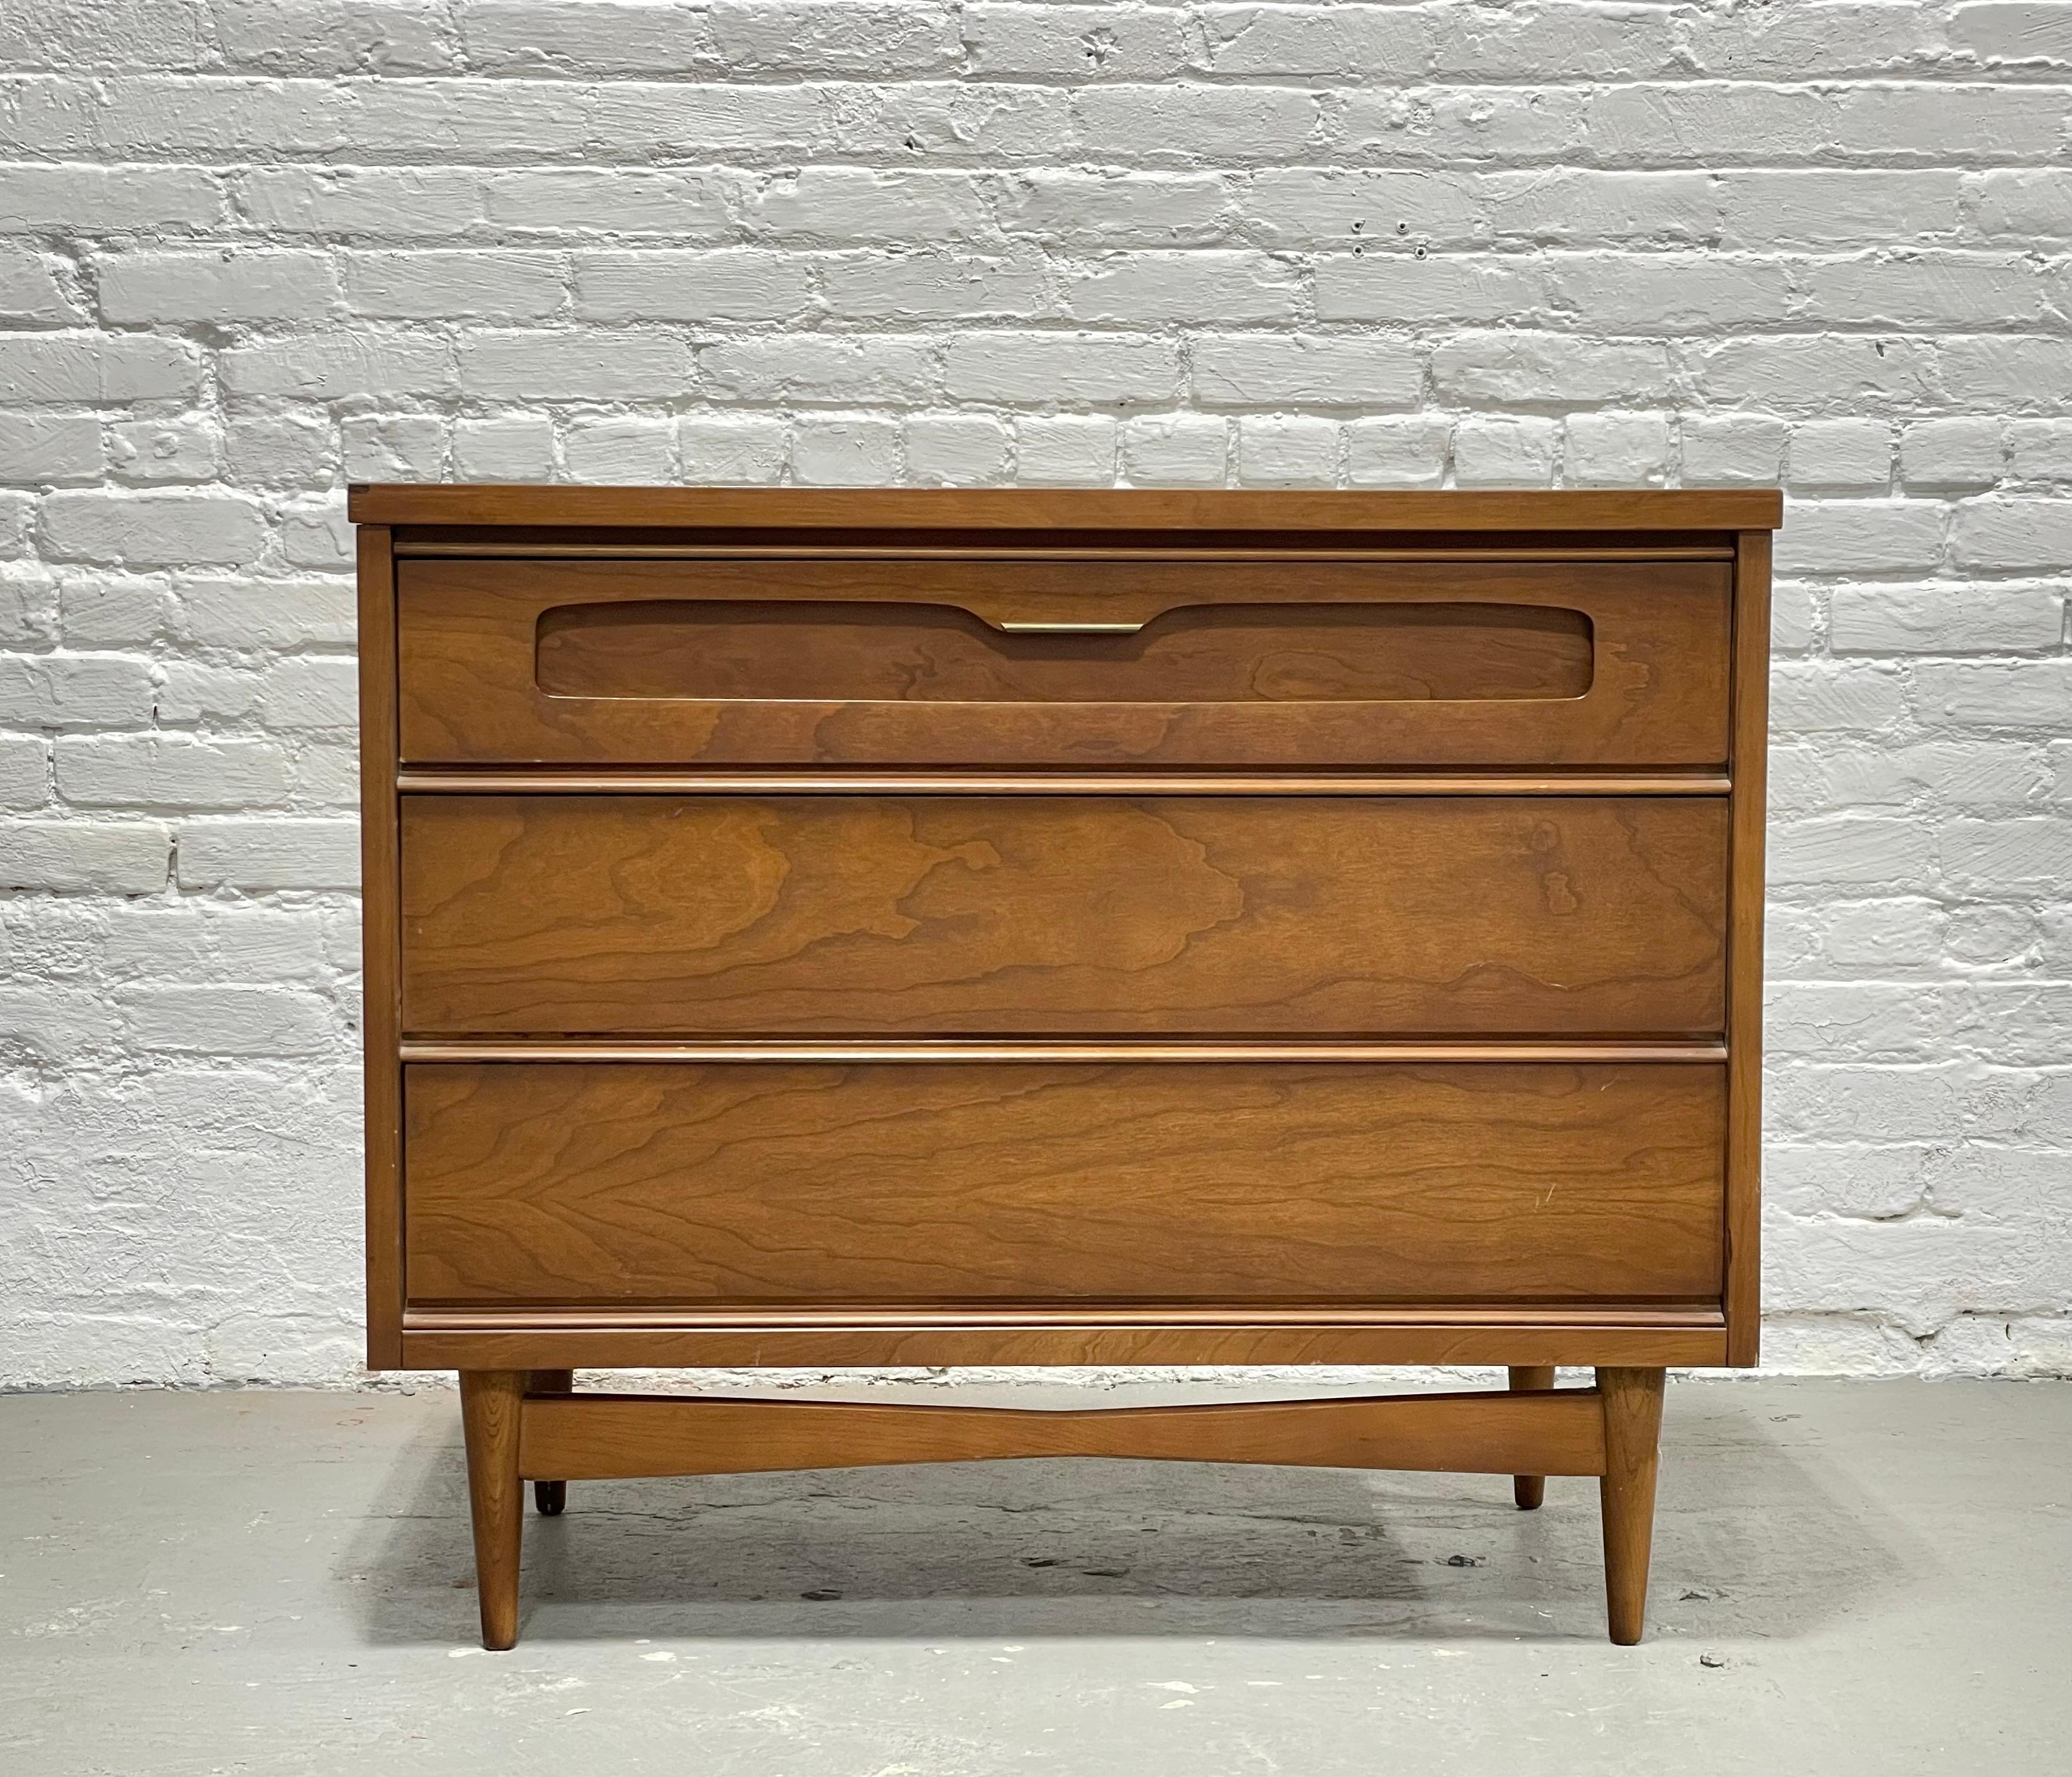 Mid Century Modern Petite Dresser von Bassett Furniture Co., ca. 1960er Jahre. Dieses durchdachte Möbelstück nimmt nur wenig Platz auf dem Boden ein und bietet dennoch drei tiefe und geräumige Schubladen zur Aufbewahrung. Platzieren Sie ihn im